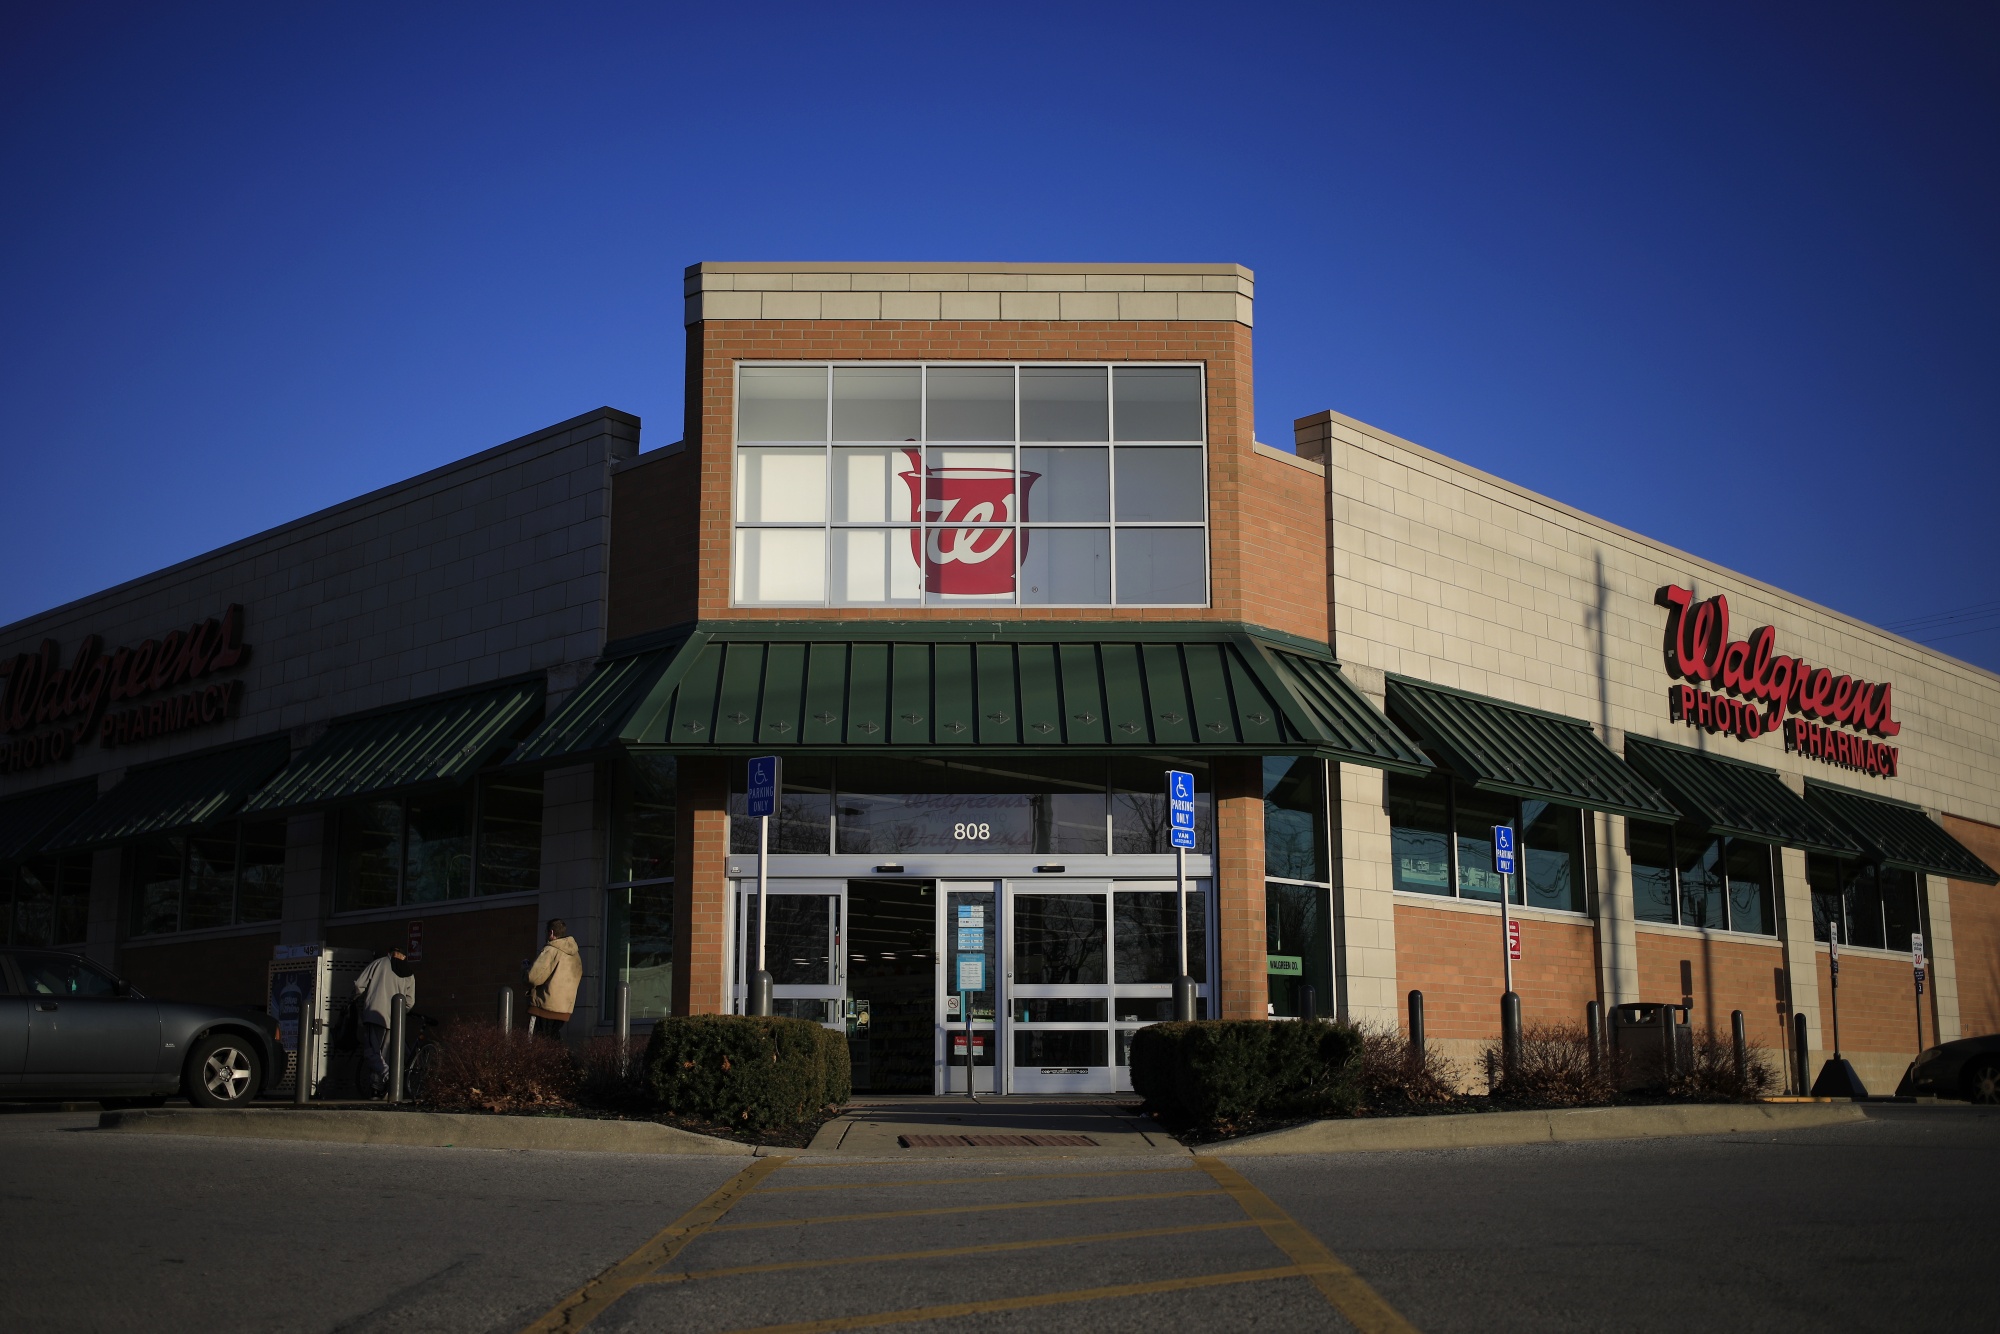 A Walgreens store in Louisville, Kentucky.